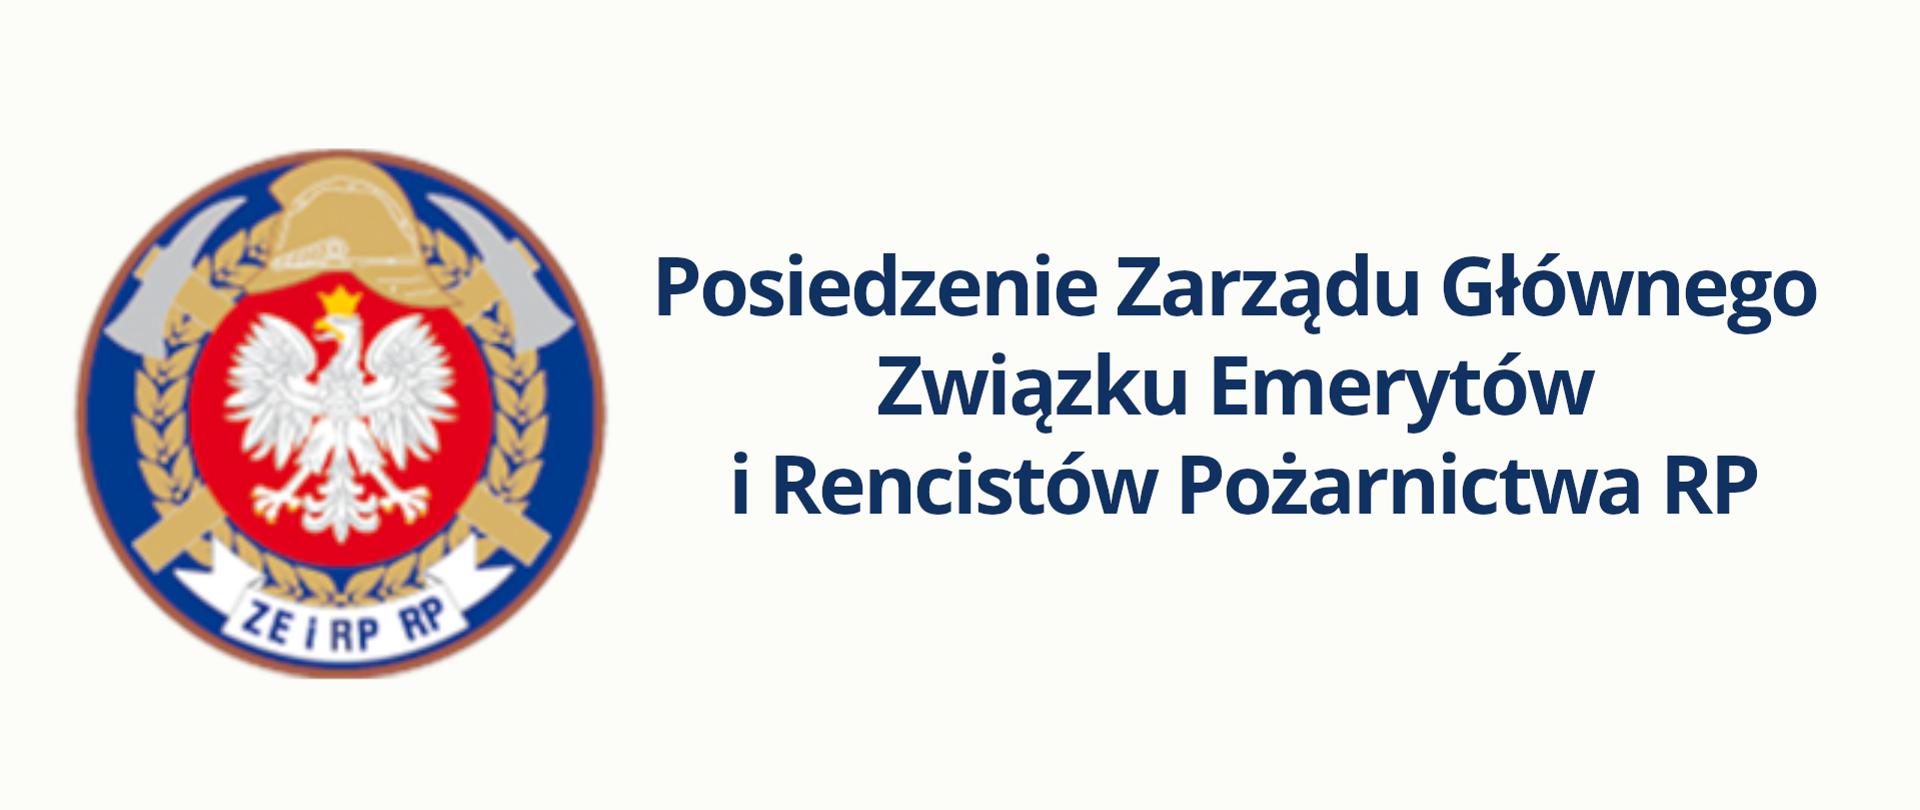 Logo oraz napis "posiedzenie Zarządu Głównego Związku Emerytów i Rencistów Pożarnictwa RP"